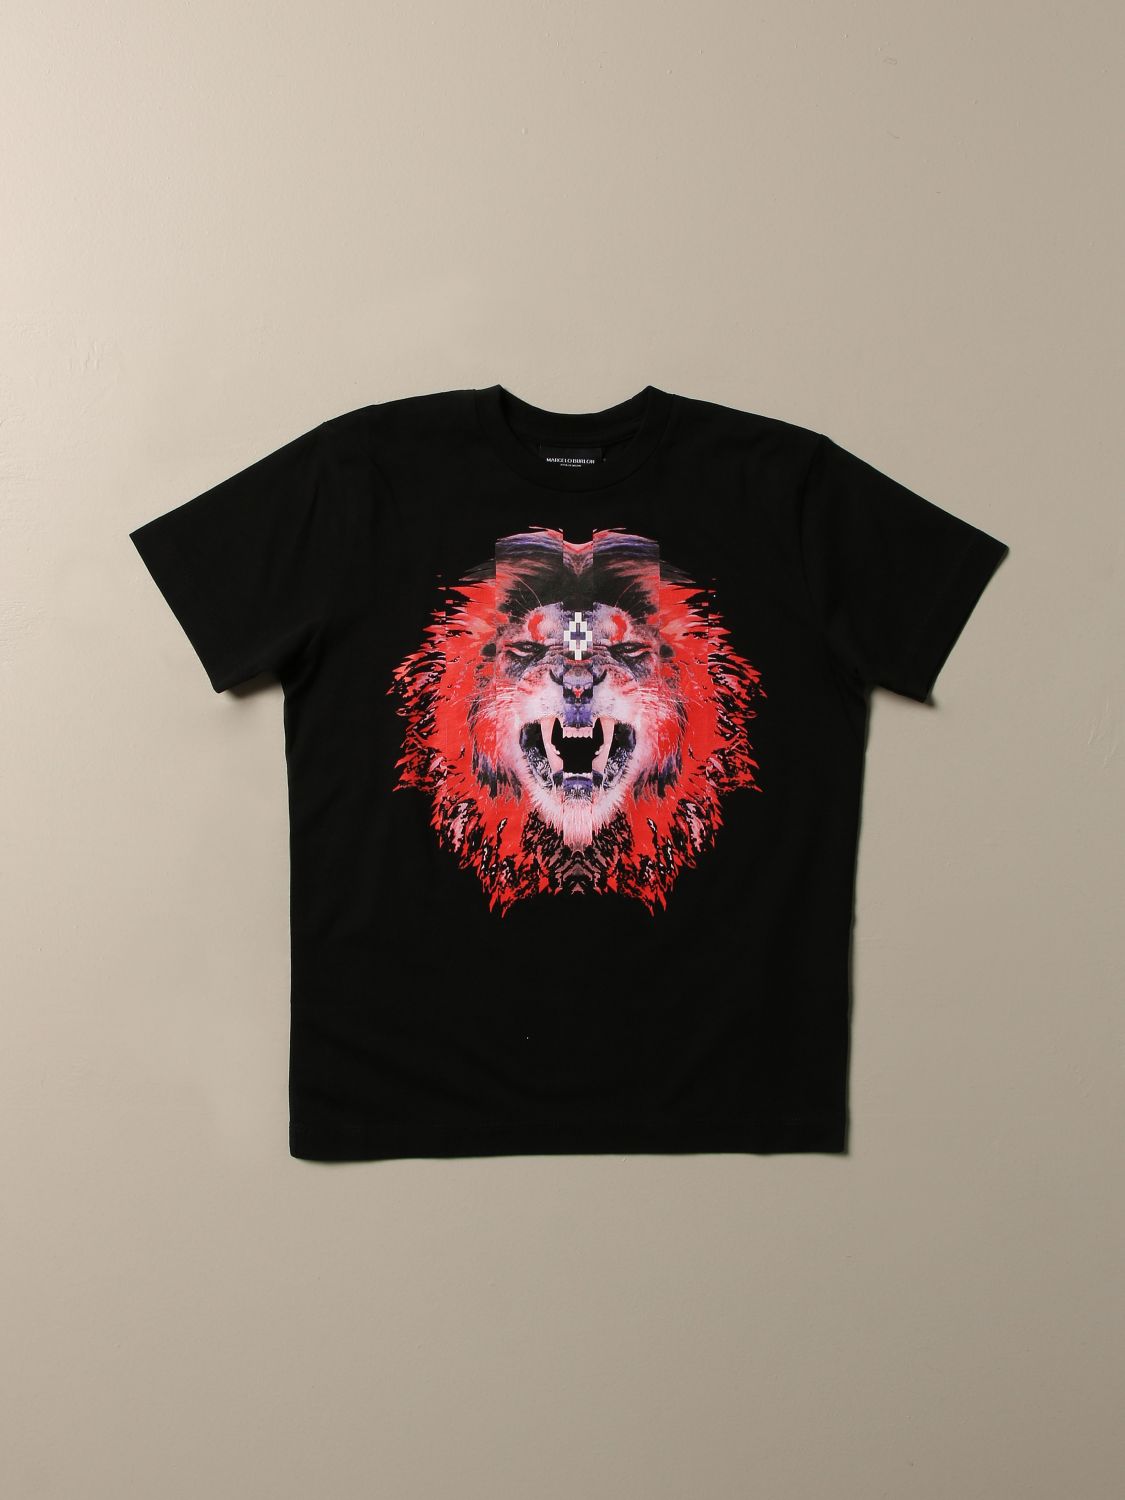 jage efterklang Flock Marcelo Burlon Outlet: T-shirt with lion print - Black | Marcelo Burlon t- shirt 1104 0010 online on GIGLIO.COM